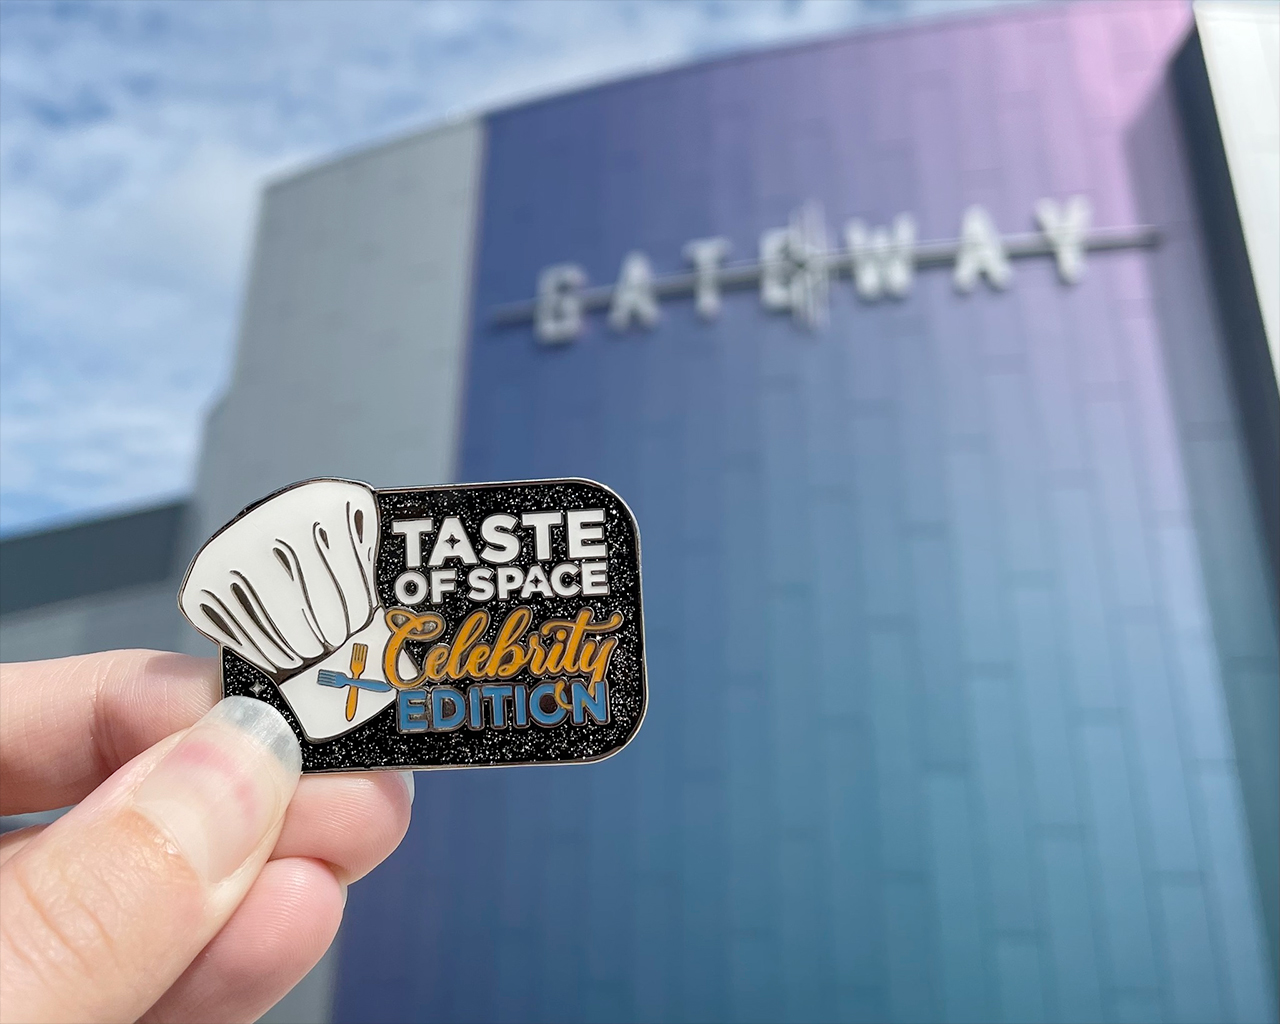 Gasten die de Taste of Space: Celebrity Chef bijwonen, ontvangen een exclusieve pin.